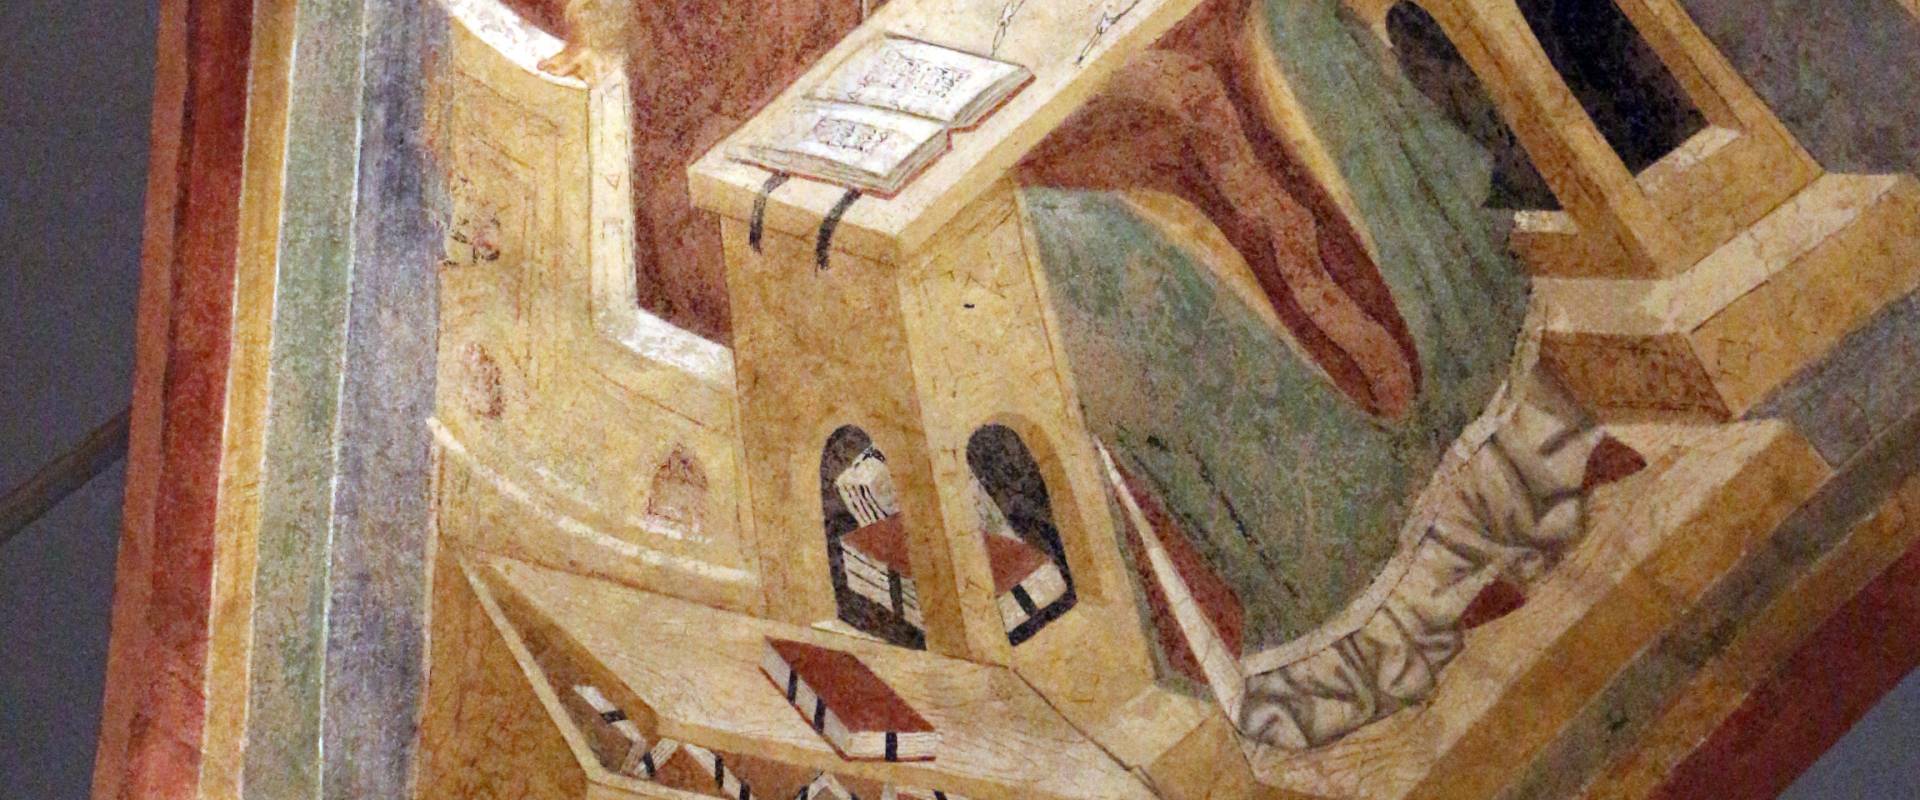 Pietro da rimini e bottega, affreschi dalla chiesa di s. chiara a ravenna, 1310-20 ca., volta con evangelisti e dottori, agostino foto di Sailko